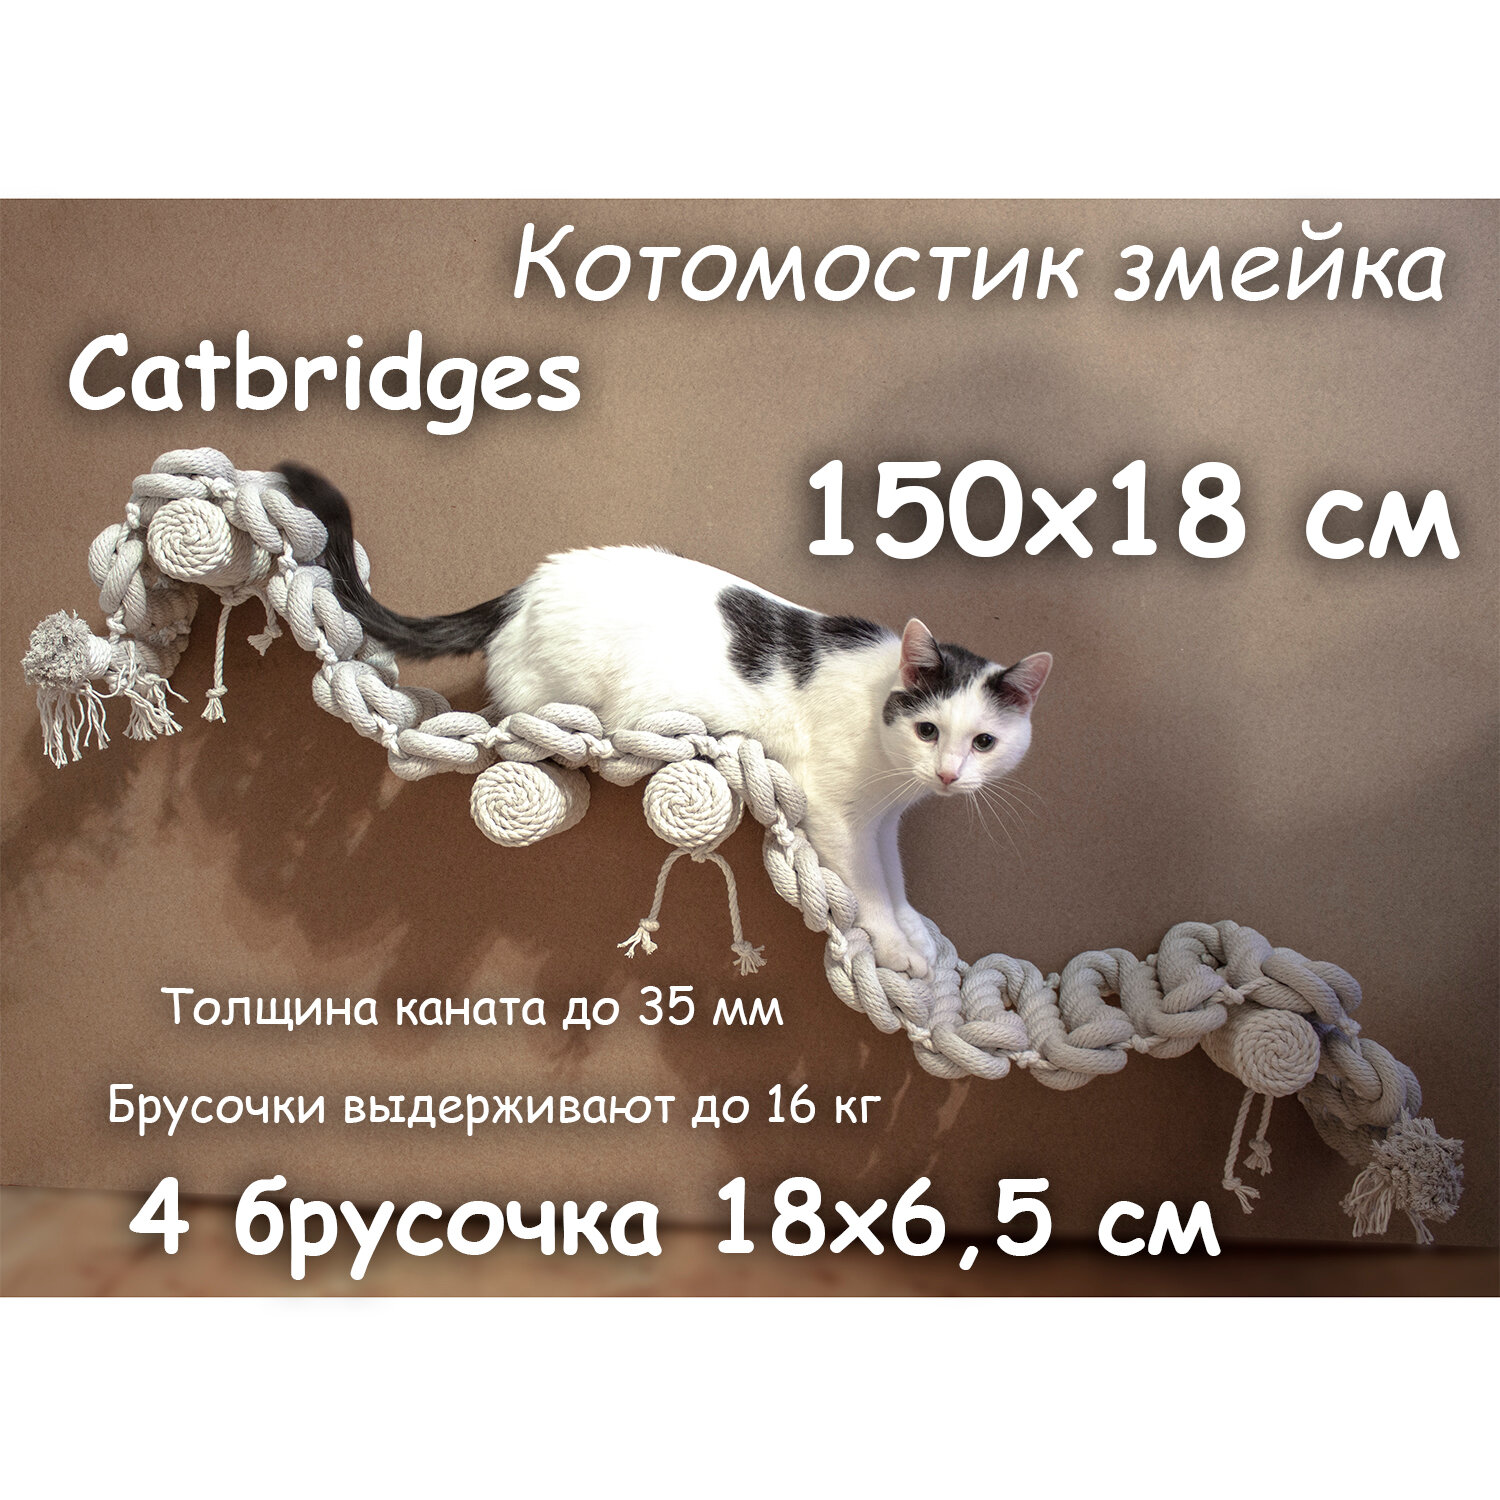 Когтеточка для кошки из хлопка . 150х18 см, 4 брусочка . канат 32 мм, шпилька 8 мм . Котомостик Змейка от Catbridges . Белый . Лежанка .